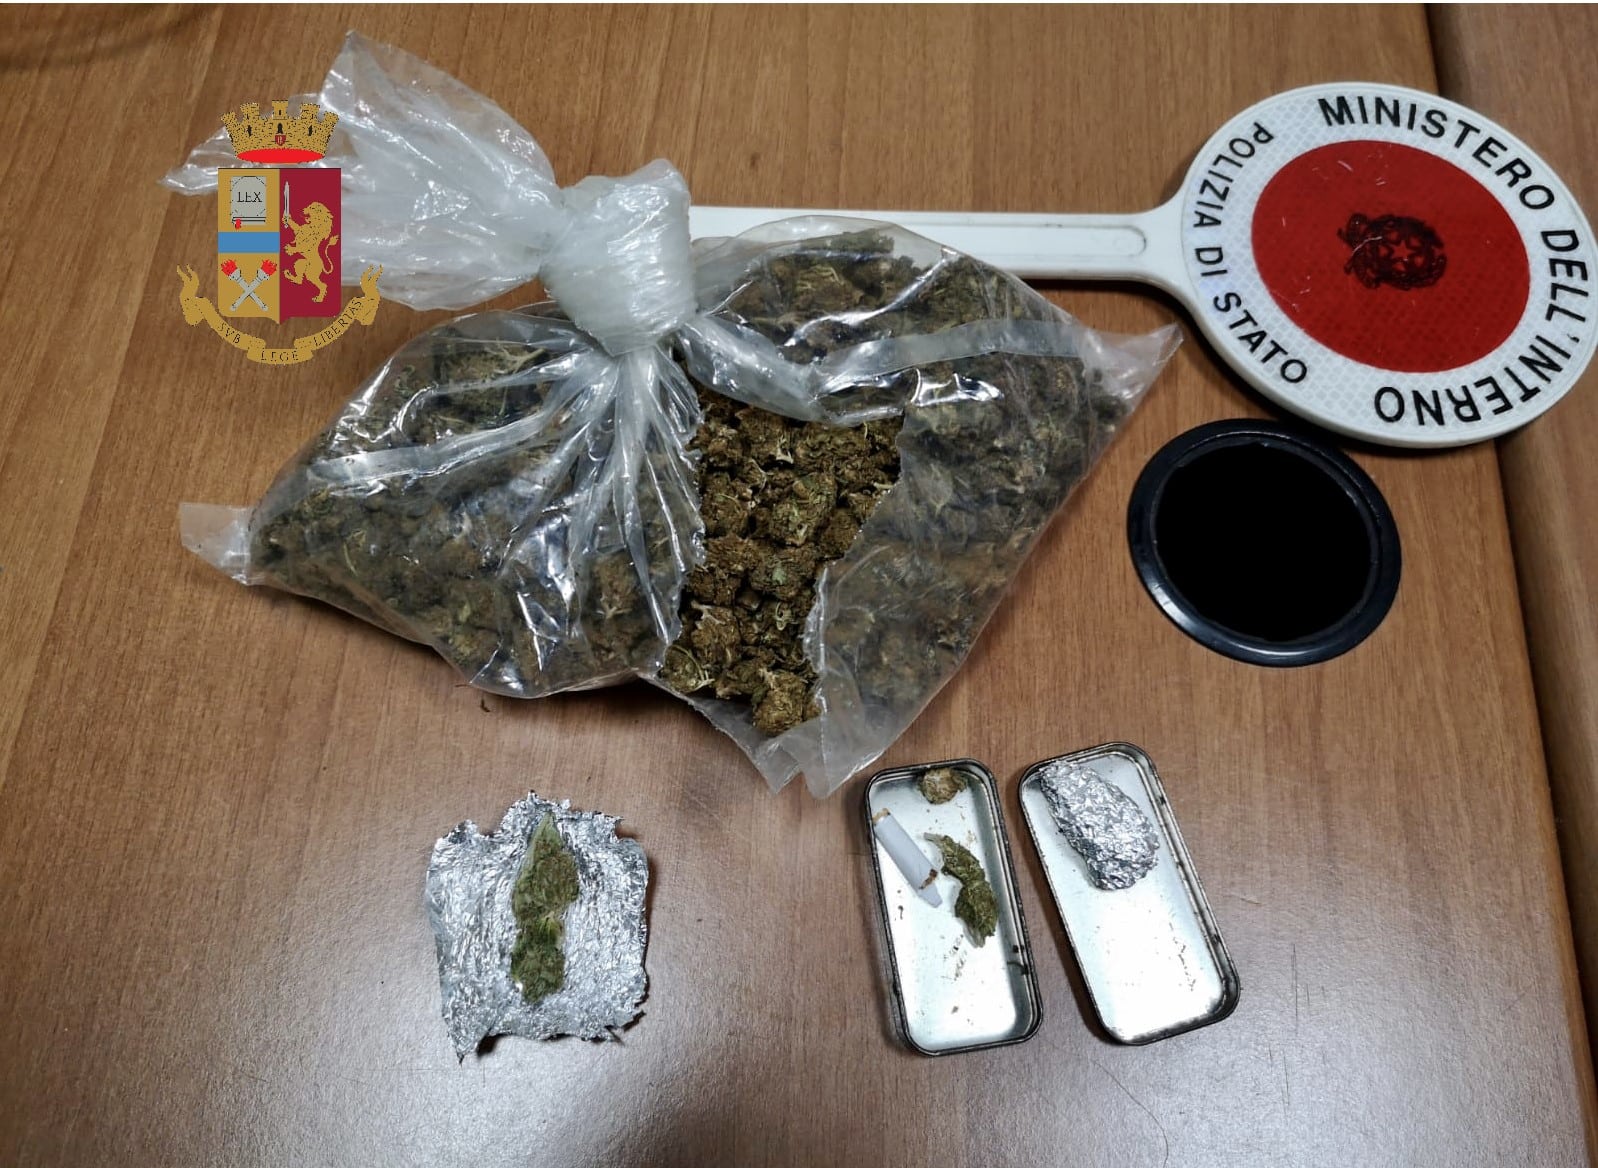 Droga, veicoli rubati e violazioni: il bilancio dei controlli a Messina